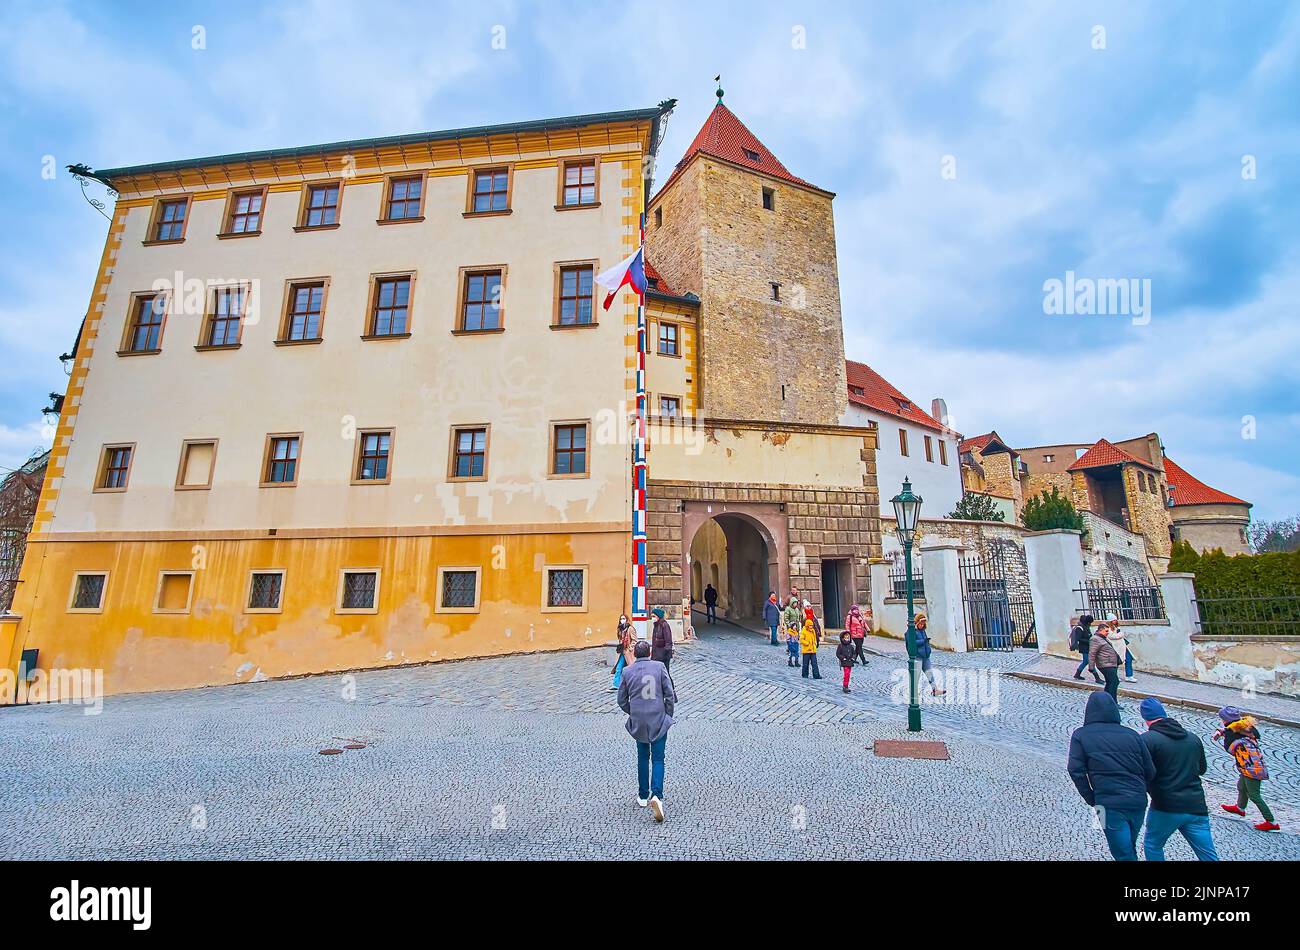 PRAGA, REPUBBLICA CAZECH - 6 MARZO 2022: La Torre Nera medievale, costruita adiacente al Palazzo Lobkowicz, situato nei terreni del Castello di Praga, il mese di marzo Foto Stock